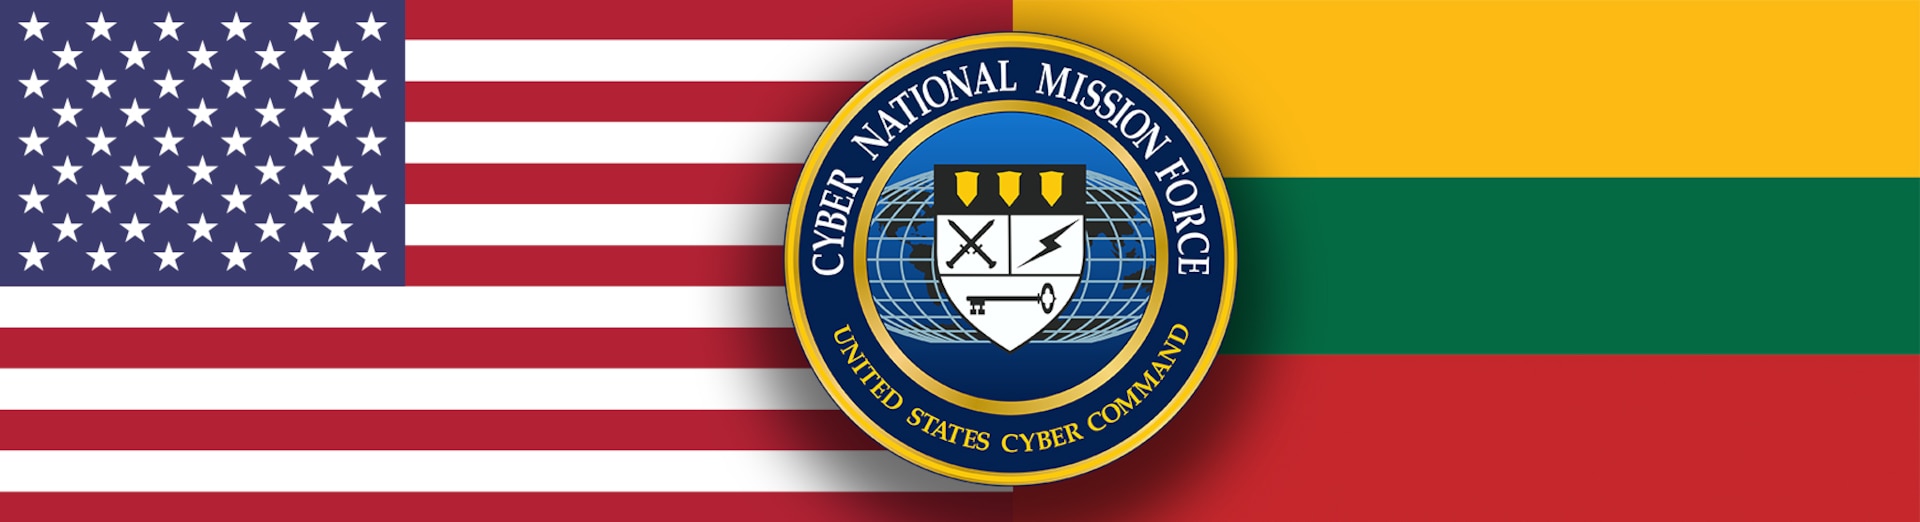 JAV pasitraukia iš antrosios gynybinės medžioklės operacijos Lietuvoje > JAV kibernetinė komanda > Naujienos